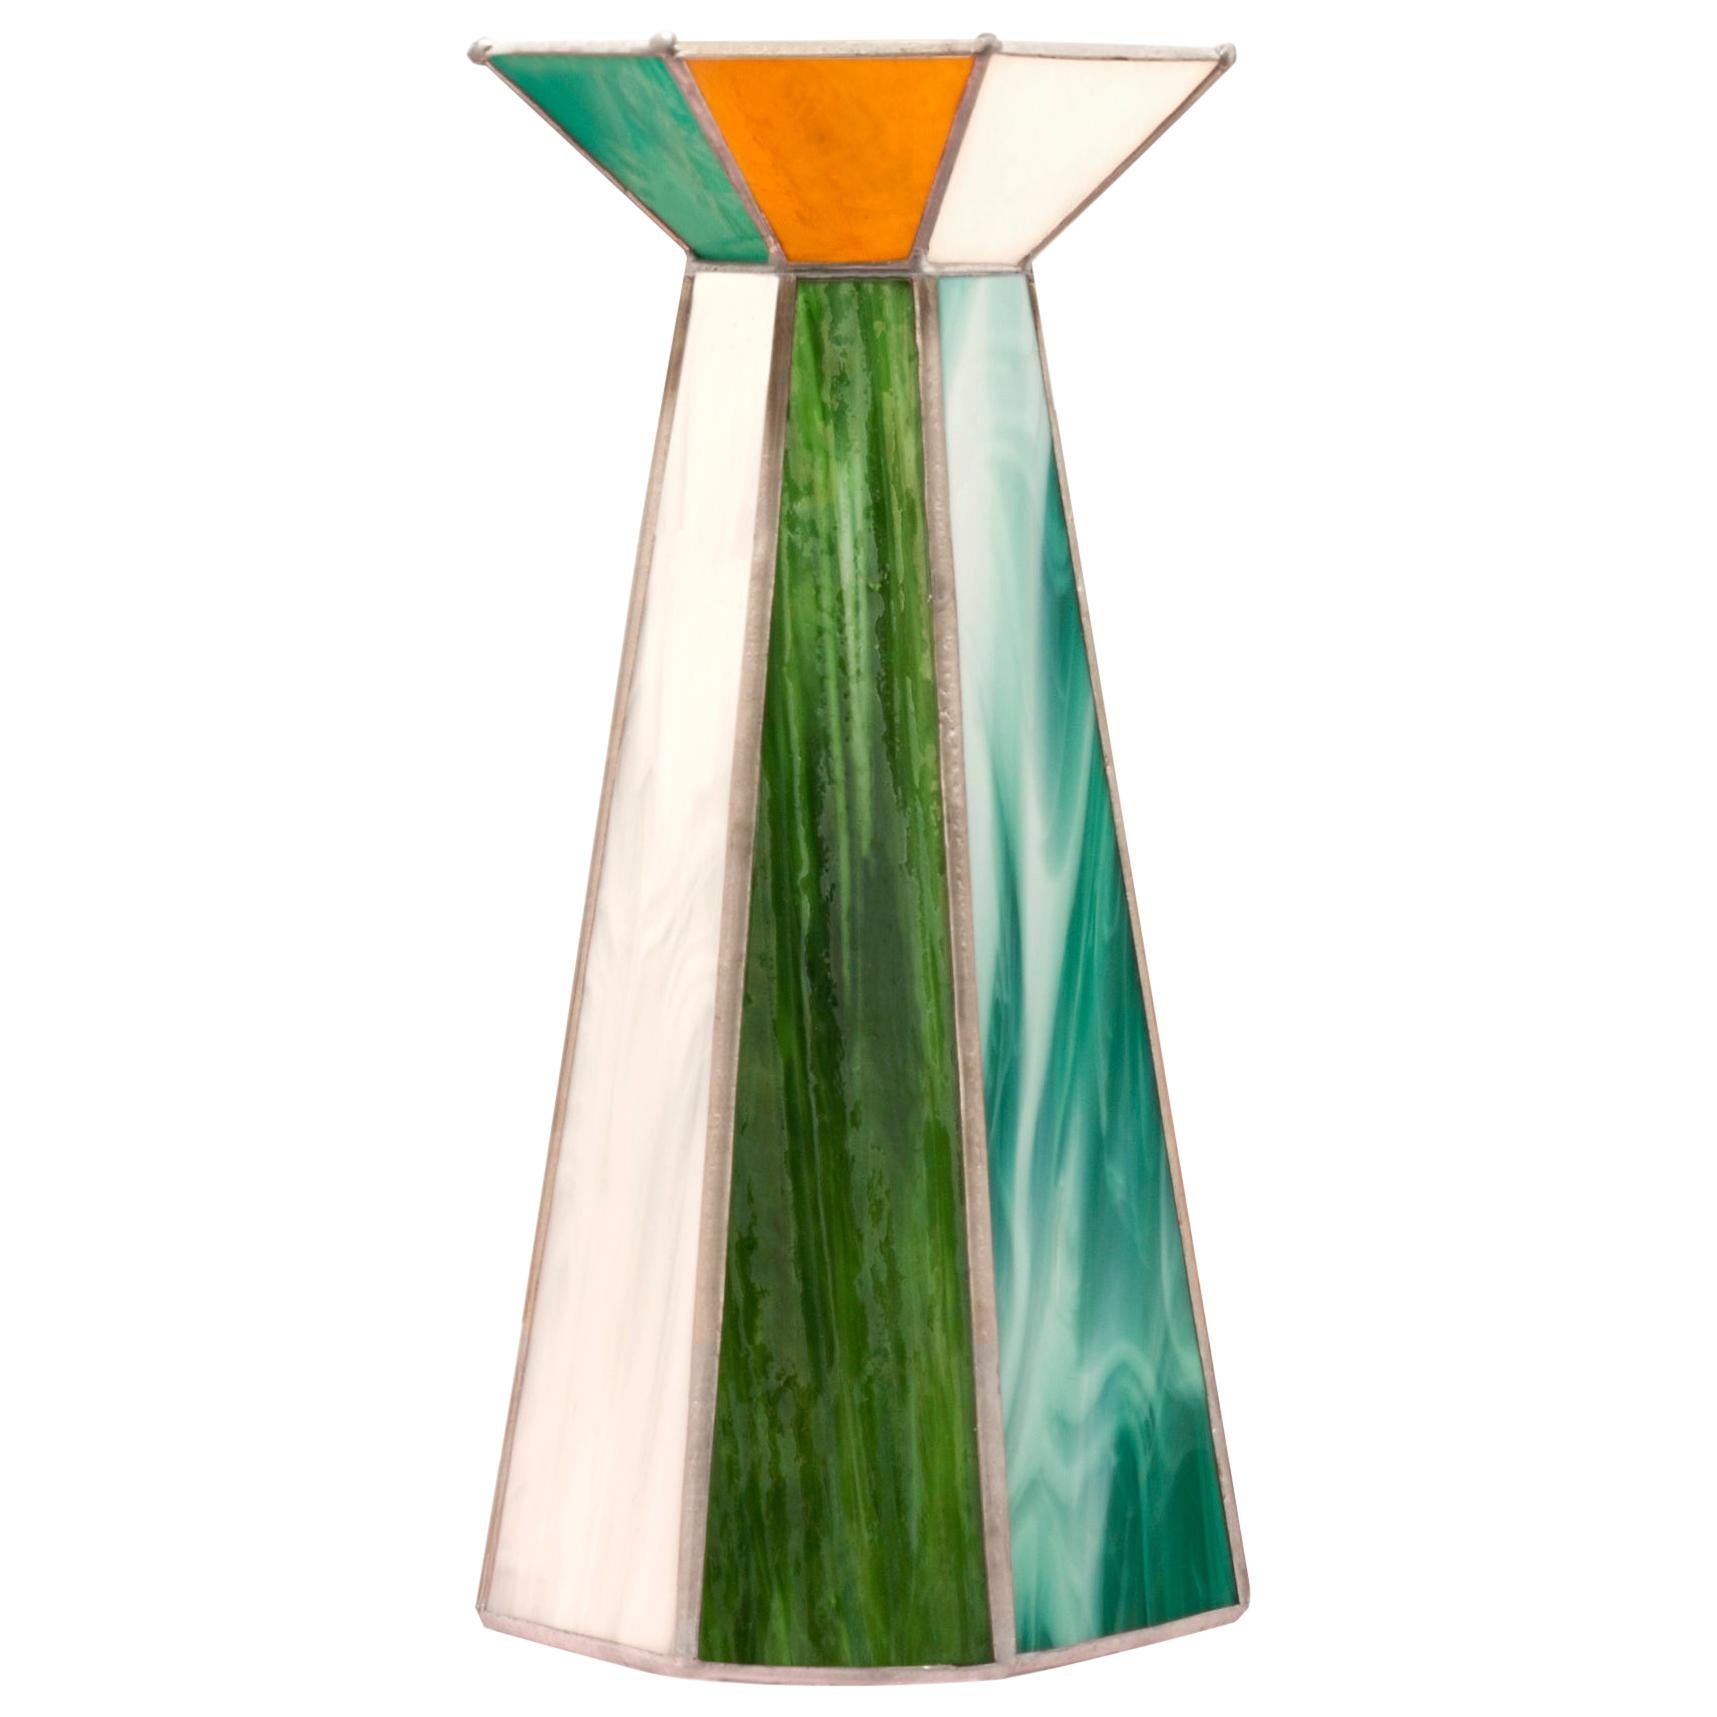 Caleido Small Vase by Serena Confalonieri